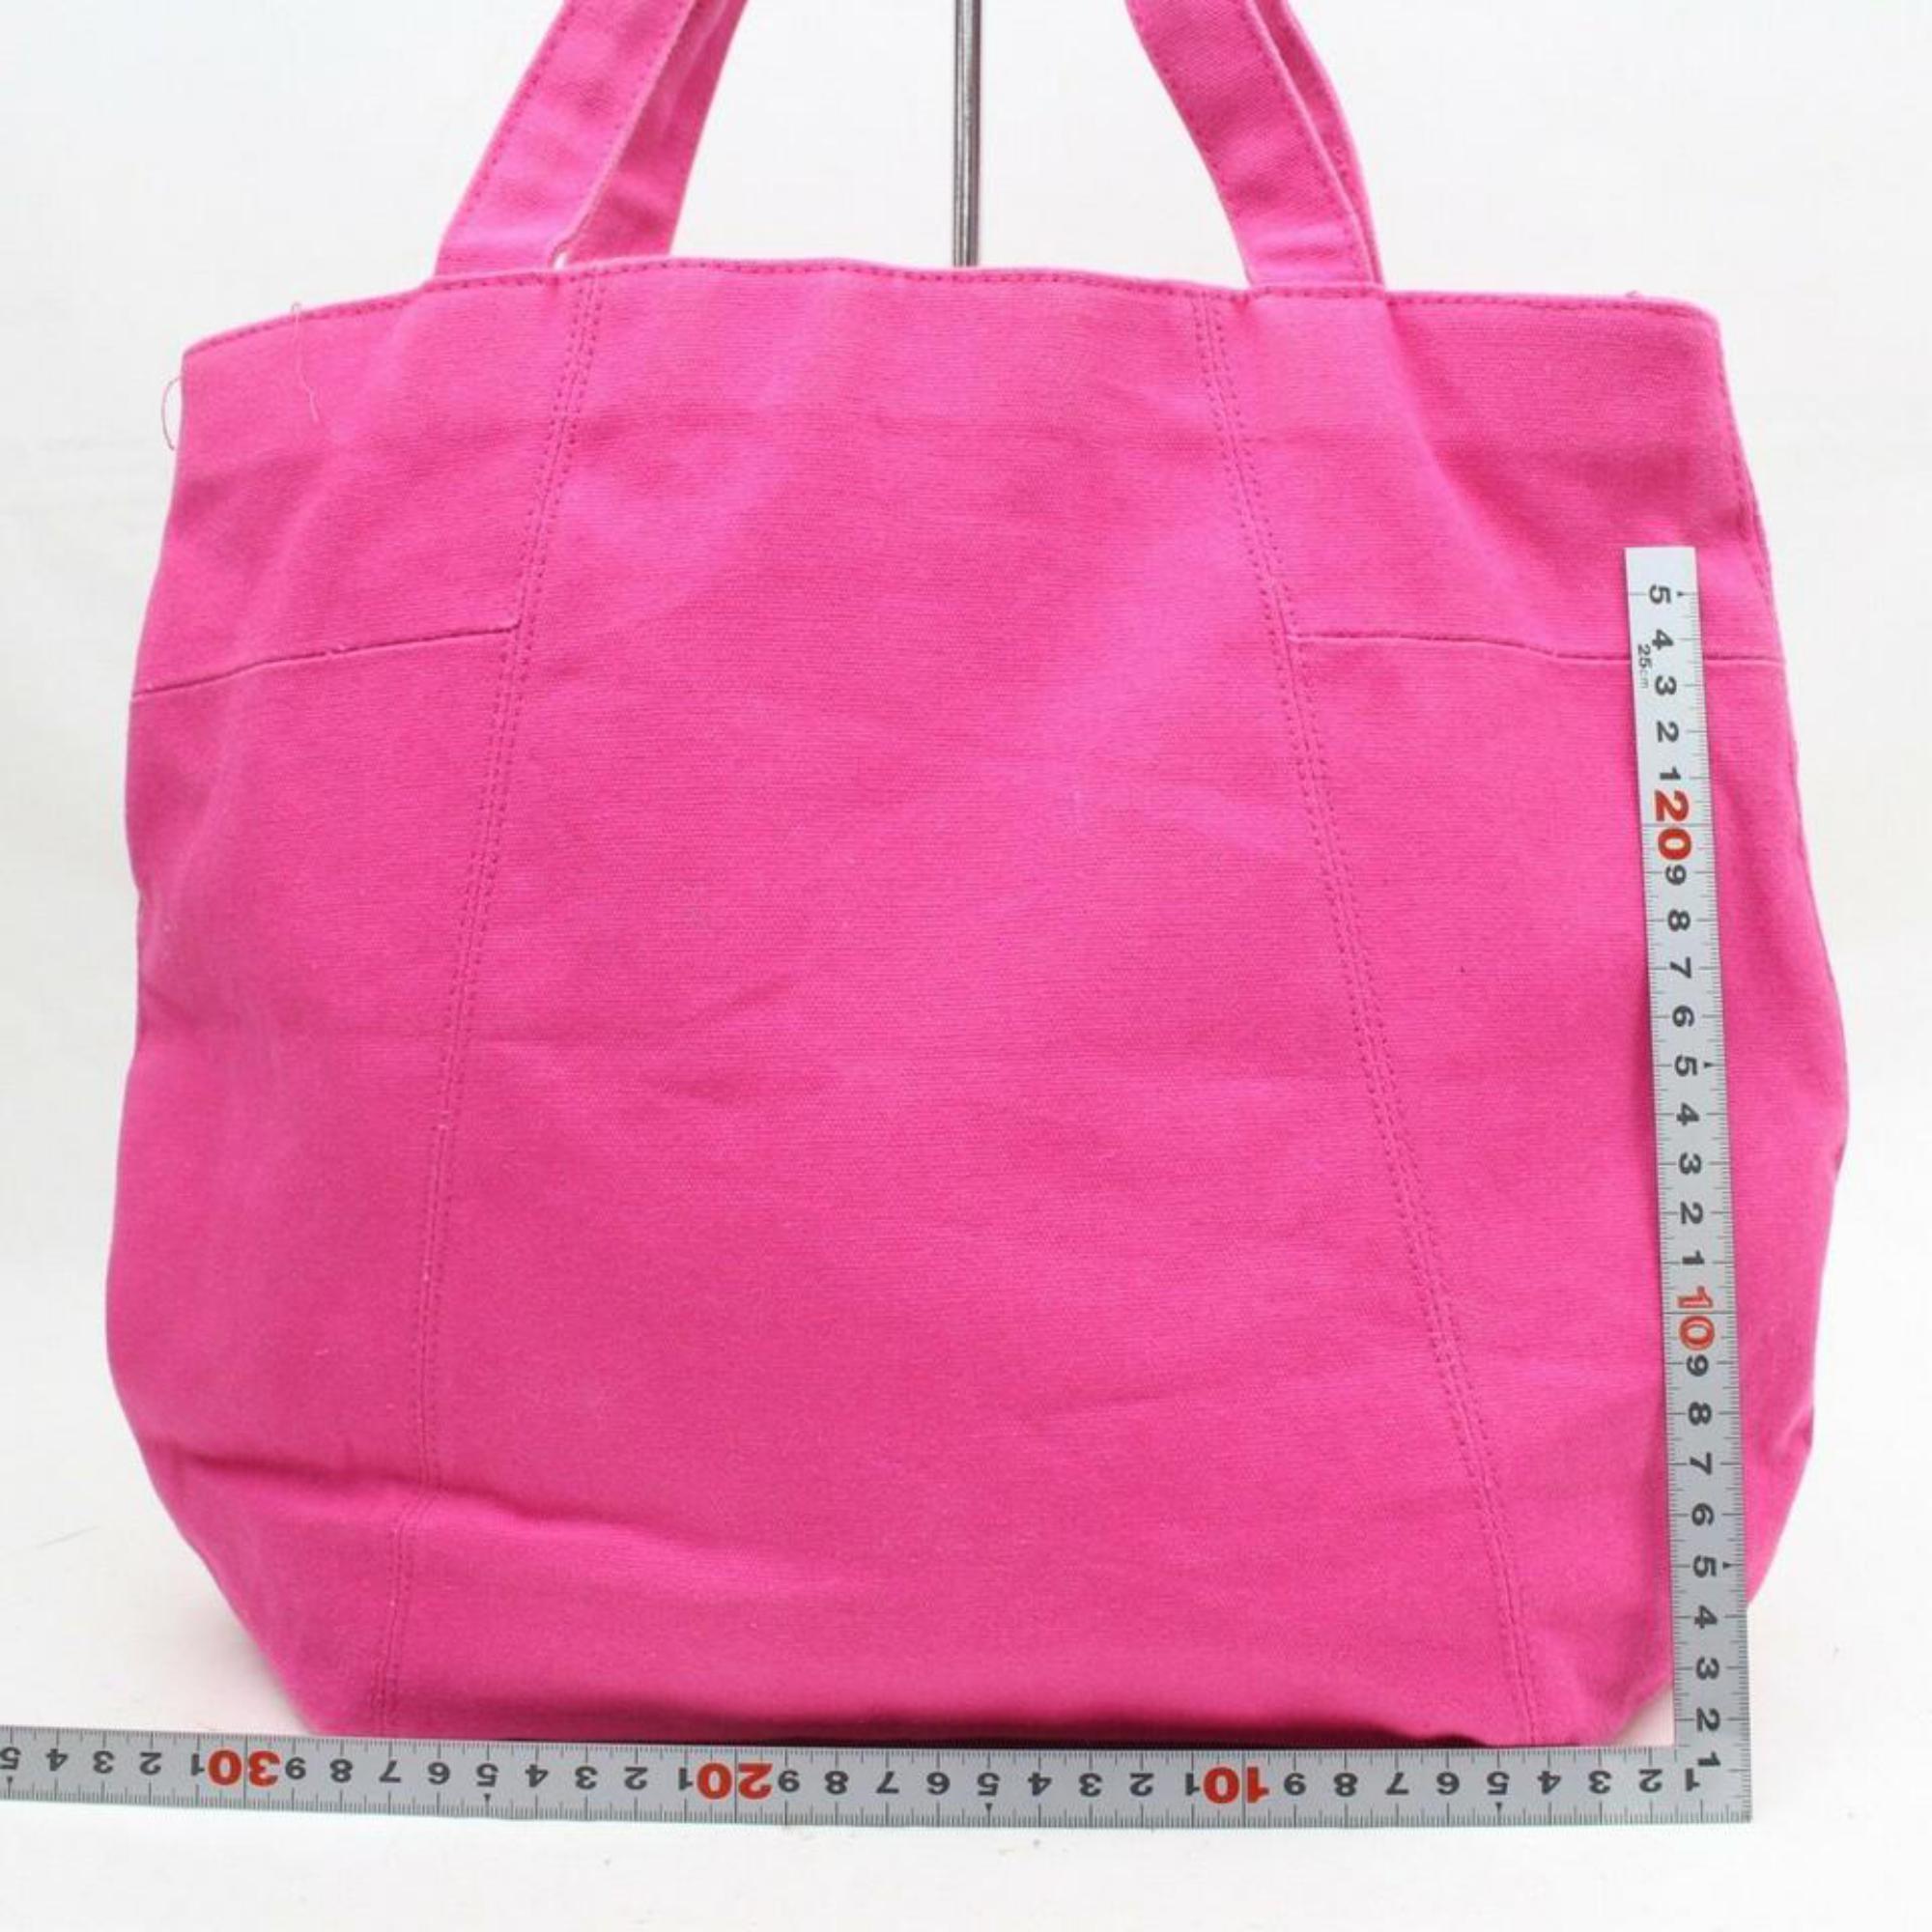 Saint Laurent Shopping Bag Parfums Edition Shopper 869749 Pink Canvas Tote For Sale 2